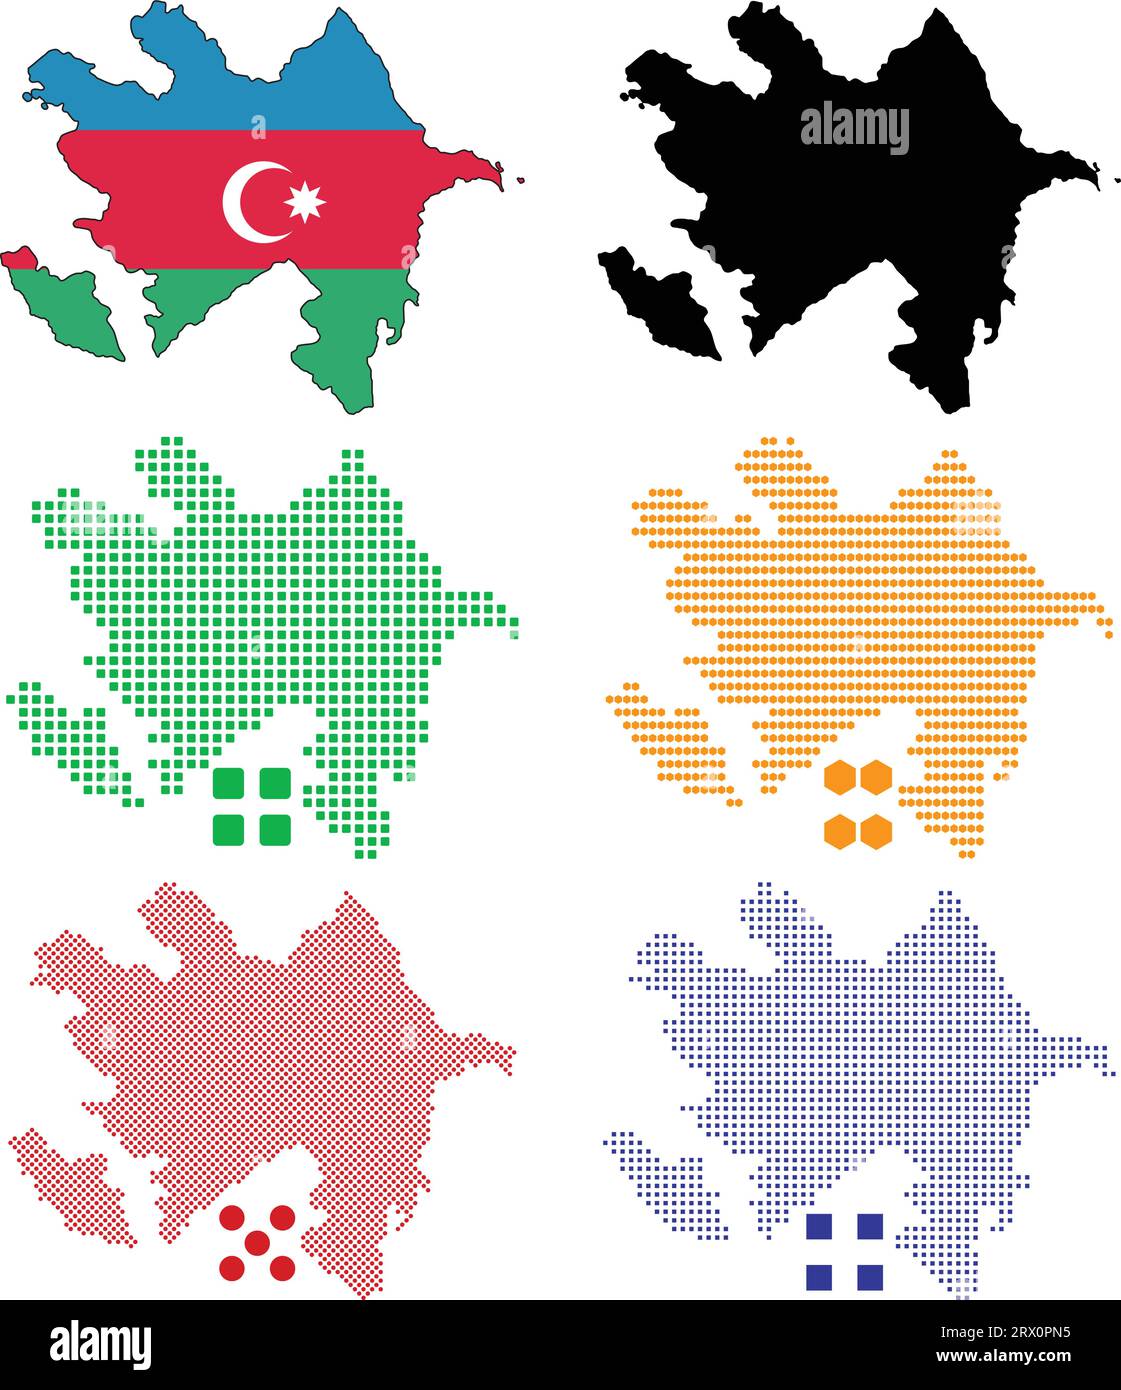 Carte de pays d'illustration vectorielle éditable en couches de l'Azerbaïdjan, qui contient la version de drapeau de pays coloré, la version de silhouette noire et defferent pix Illustration de Vecteur